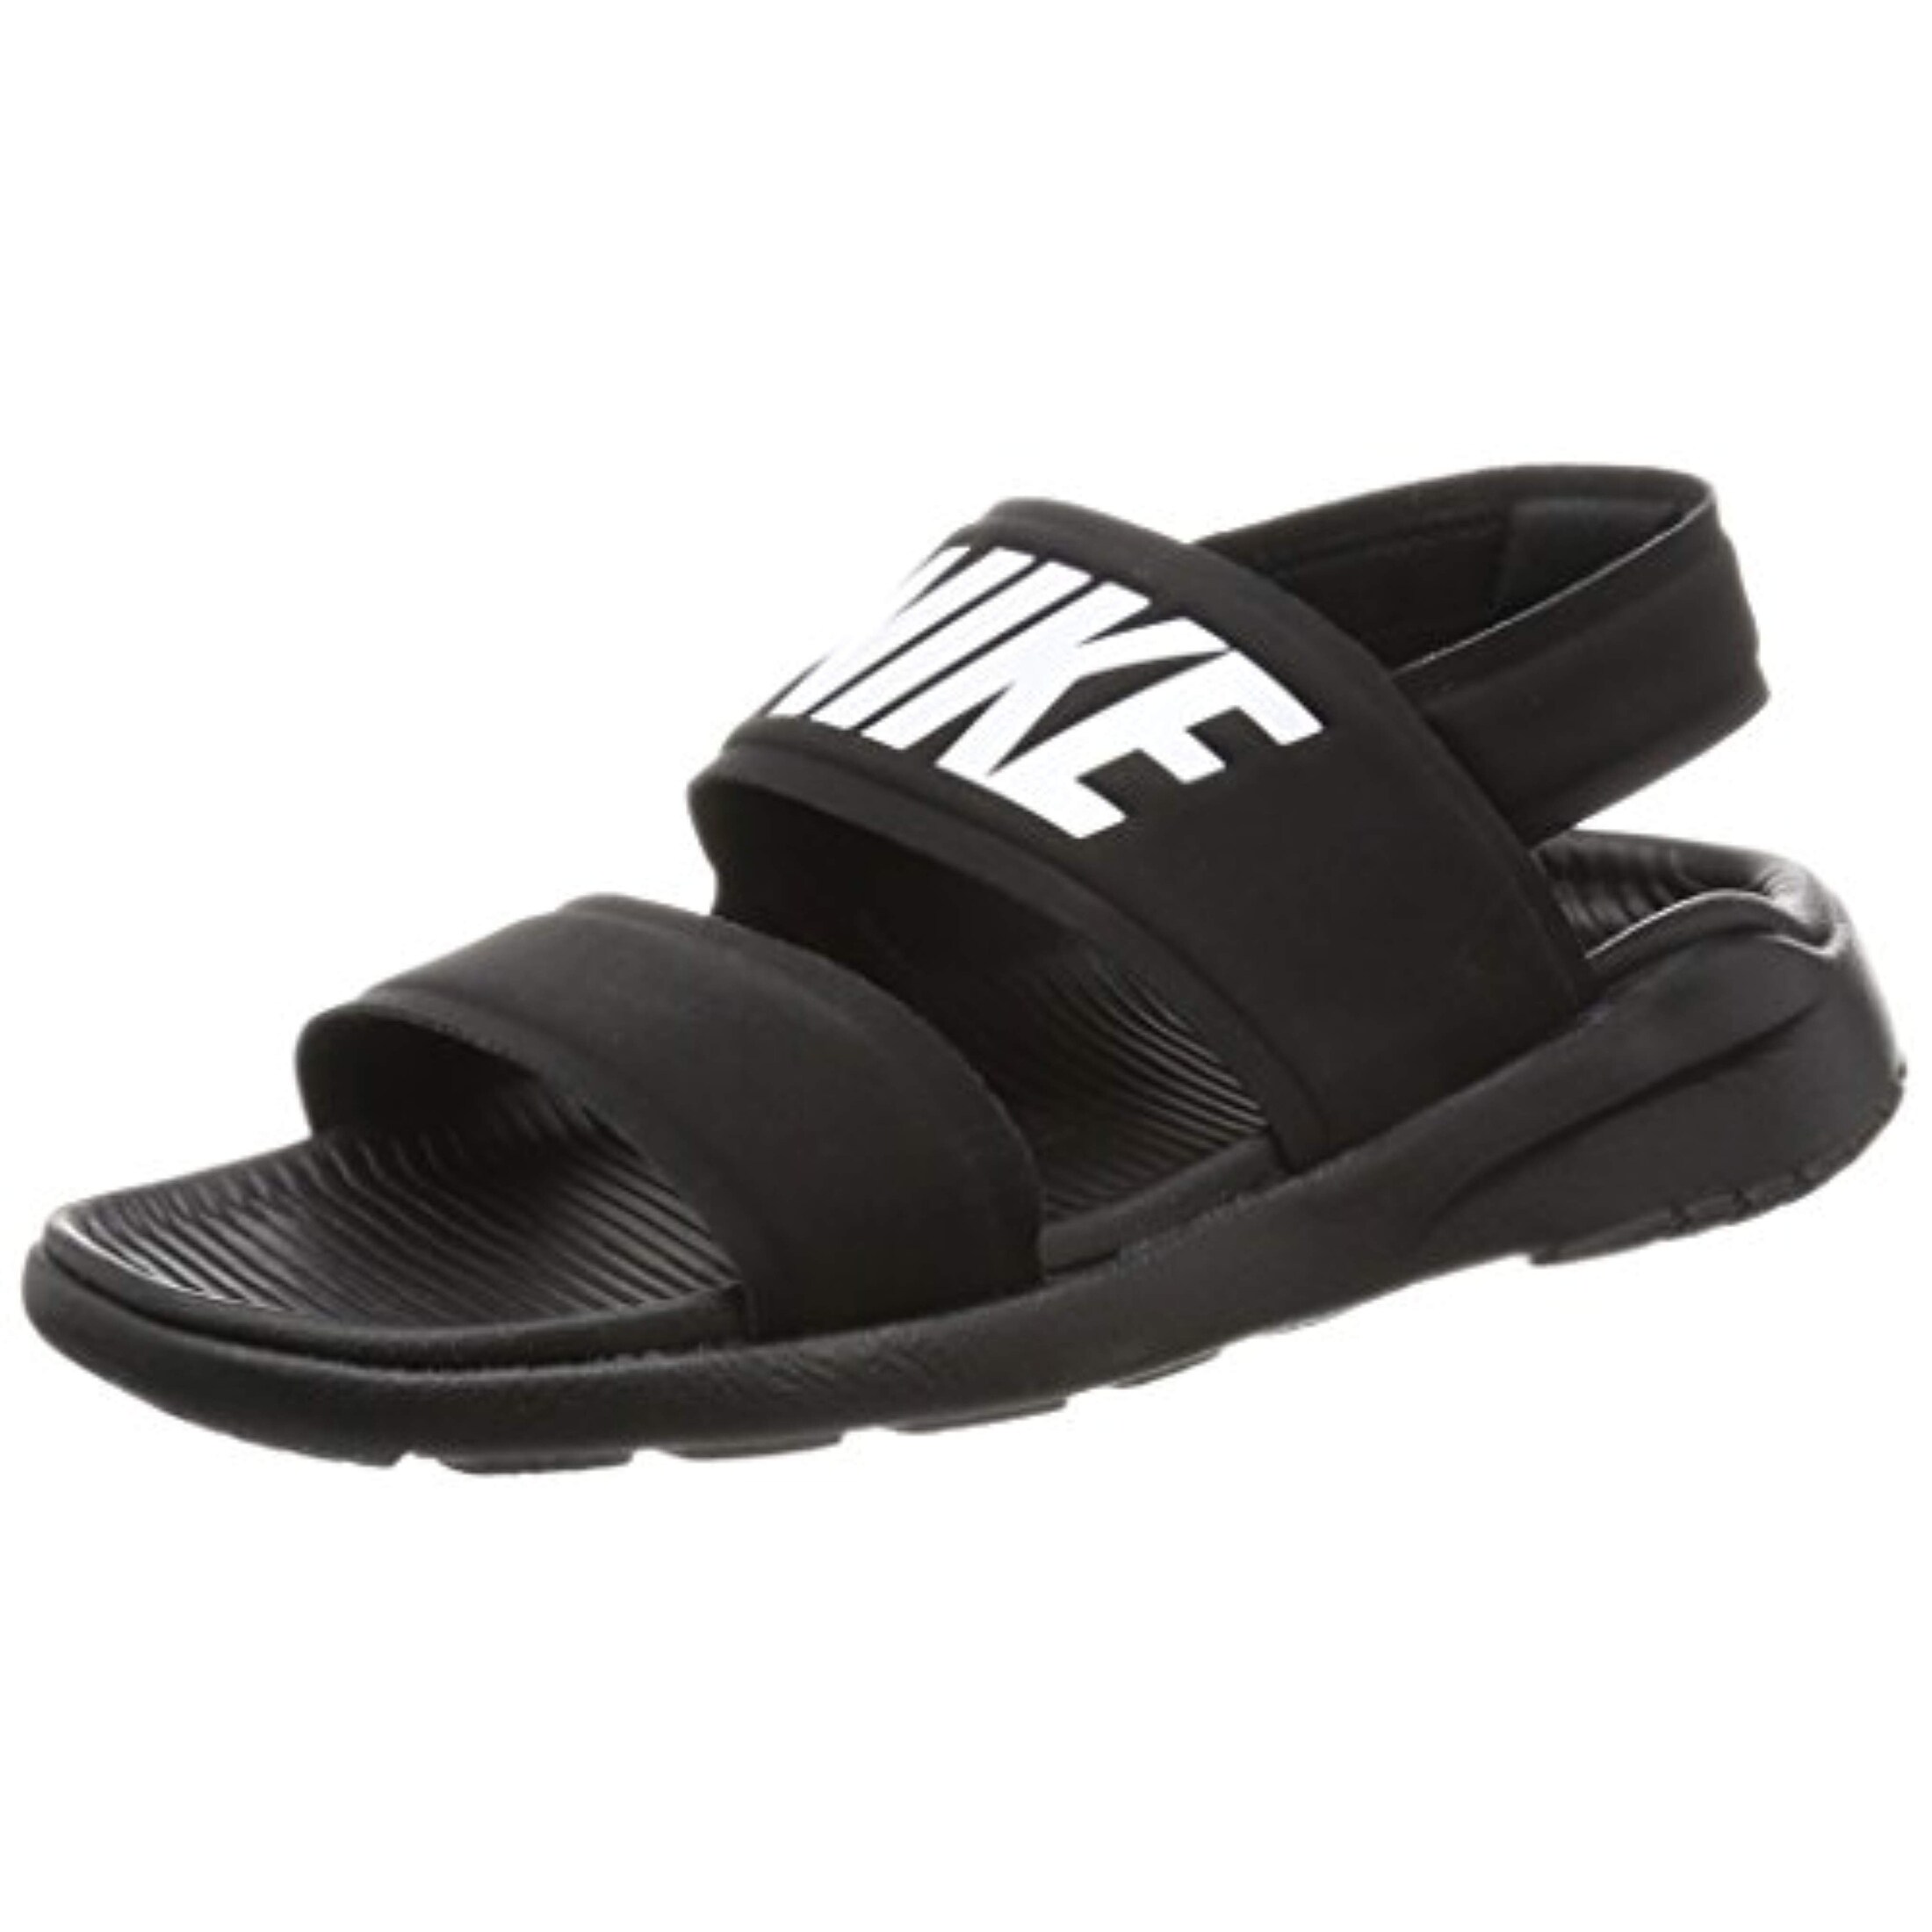 nike women's sandals on sale